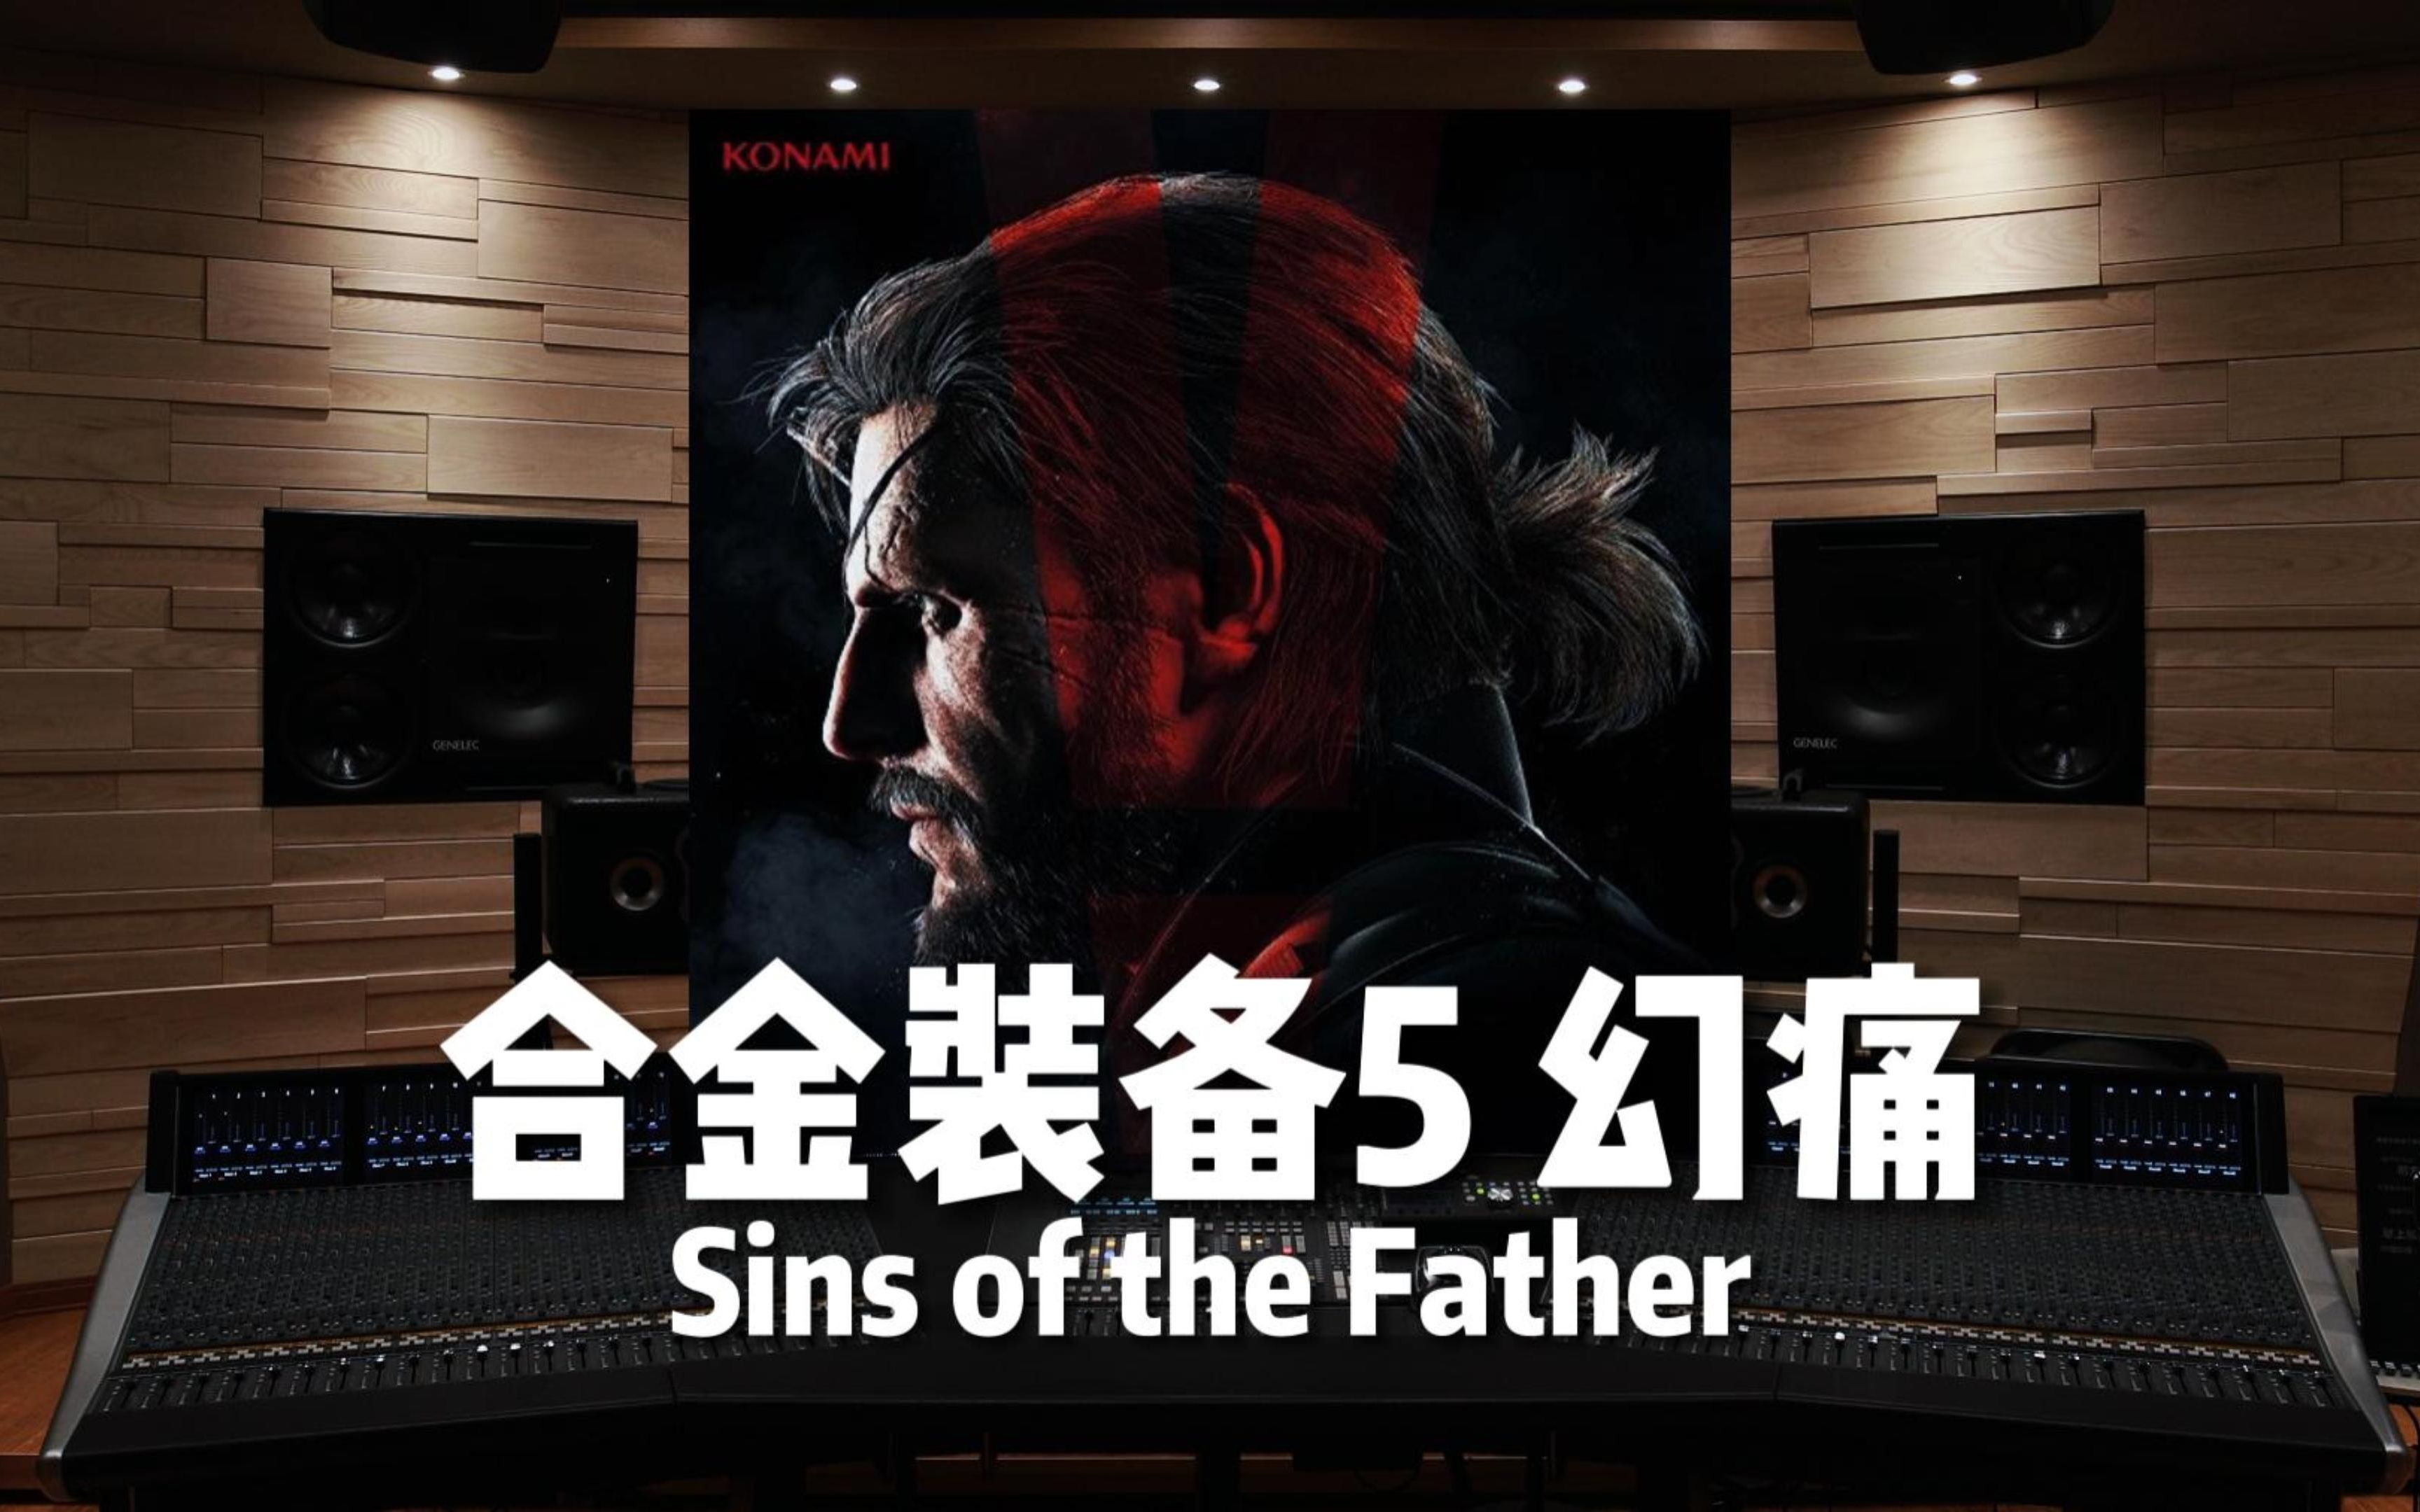 【合金装备5 幻痛】百万级录音棚听《Sins of the Father》游戏《合金装备5 幻痛》OST【Hi-Res】